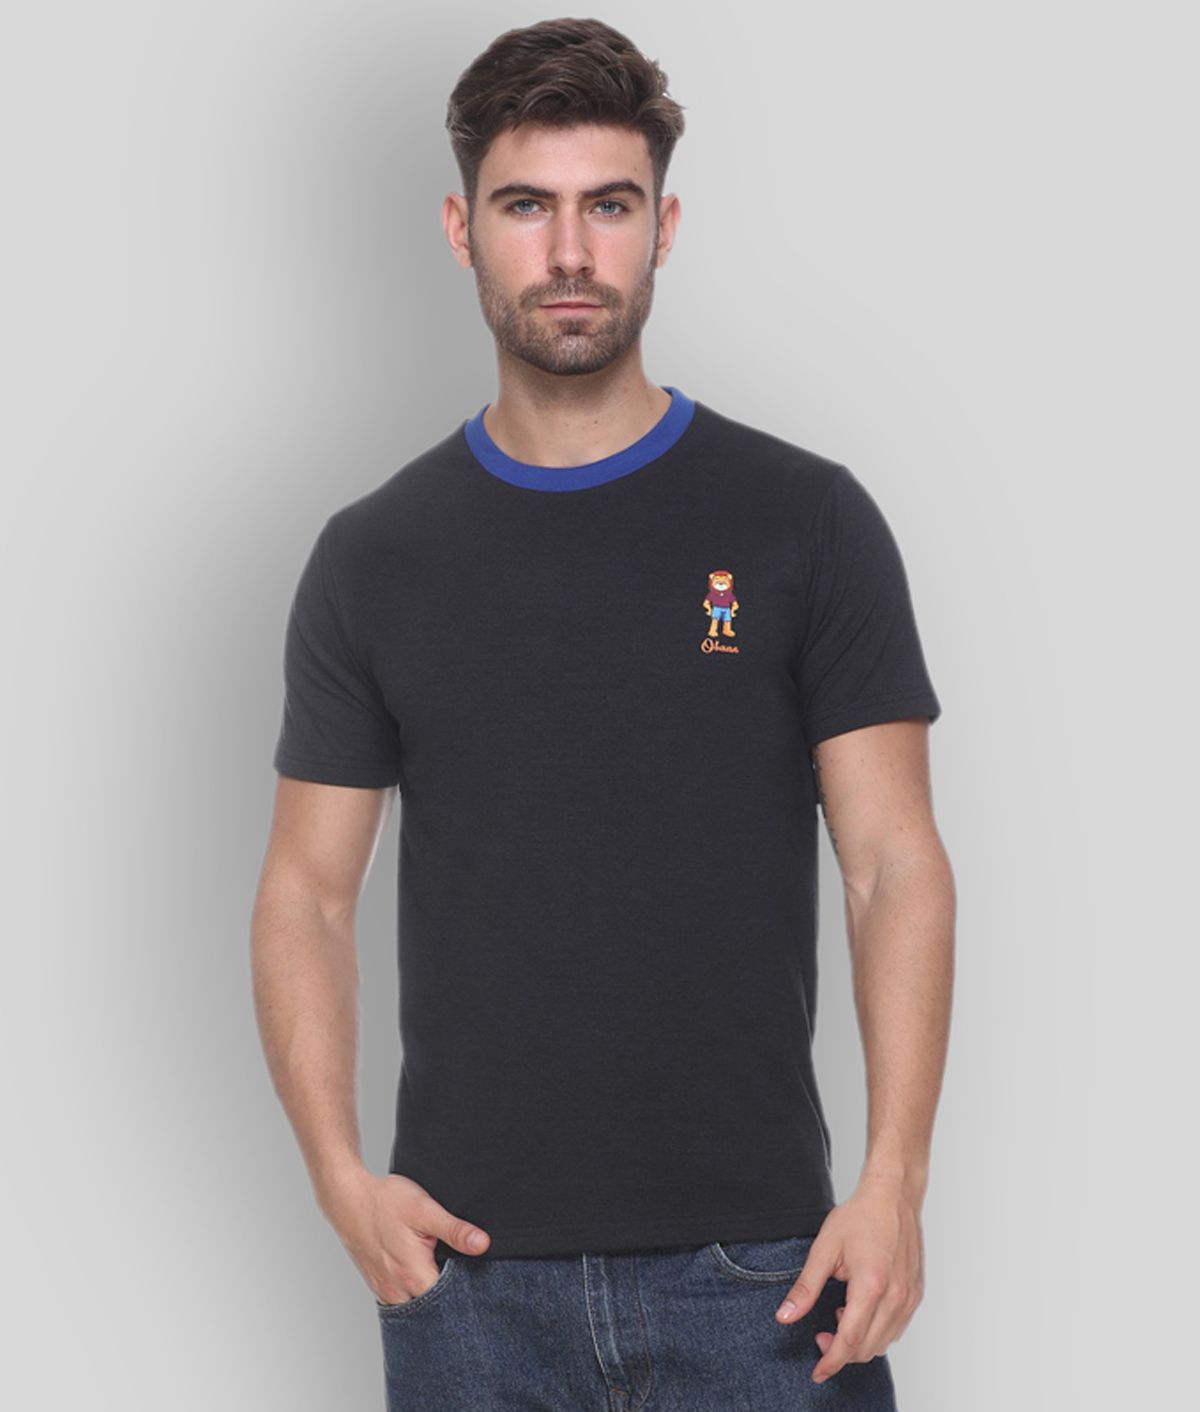     			OBAAN - Black Cotton Blend Regular Fit Men's T-Shirt ( Pack of 1 )